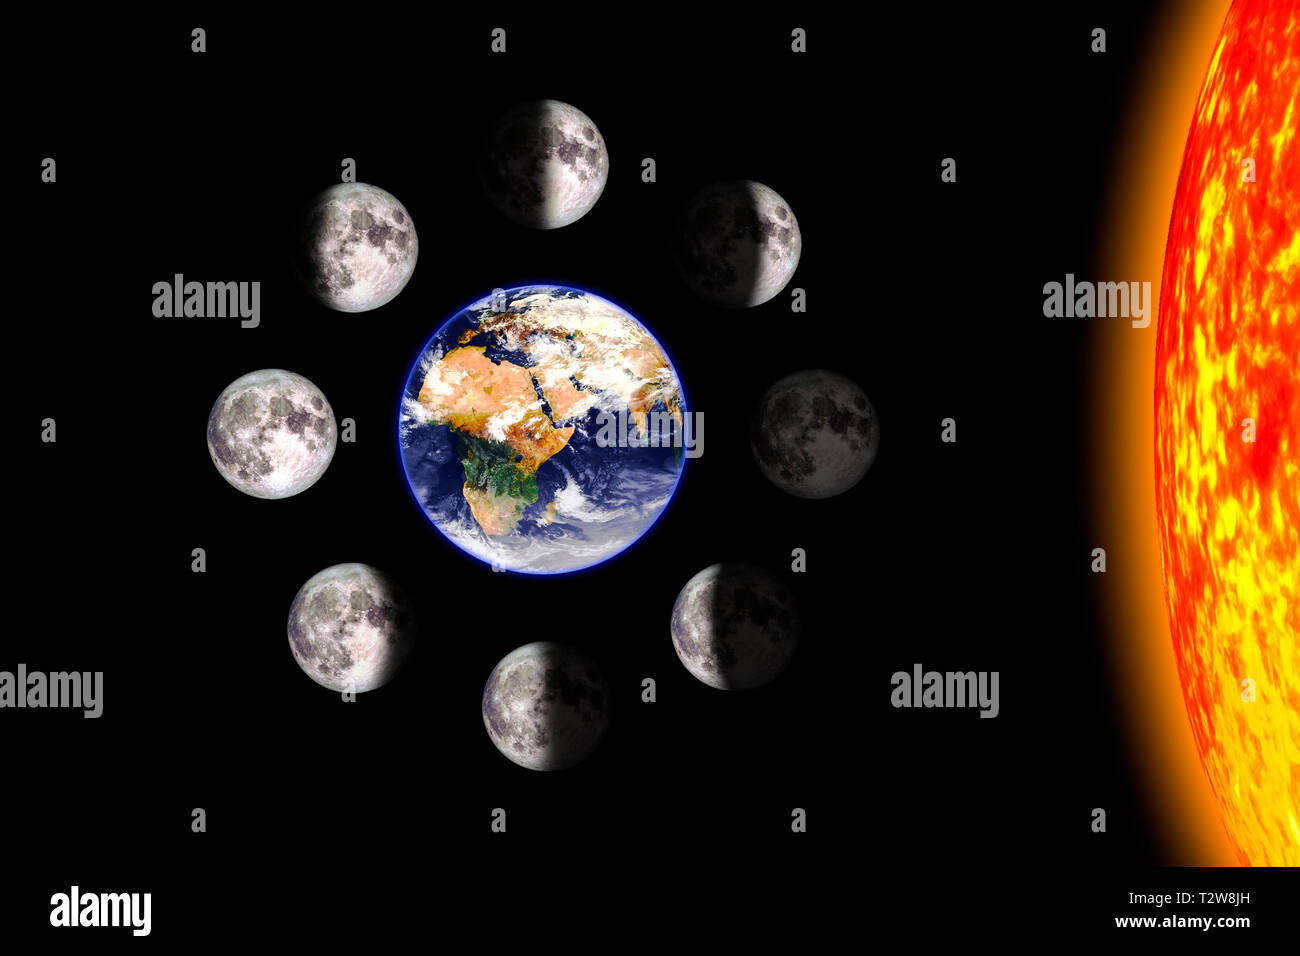 Luna o fasi lunari poster. Otto fasi del ciclo lunare attorno alla terra. Sfondo nero. 3D render illustrazione con nessun testo. Superficie di terra tex Foto Stock